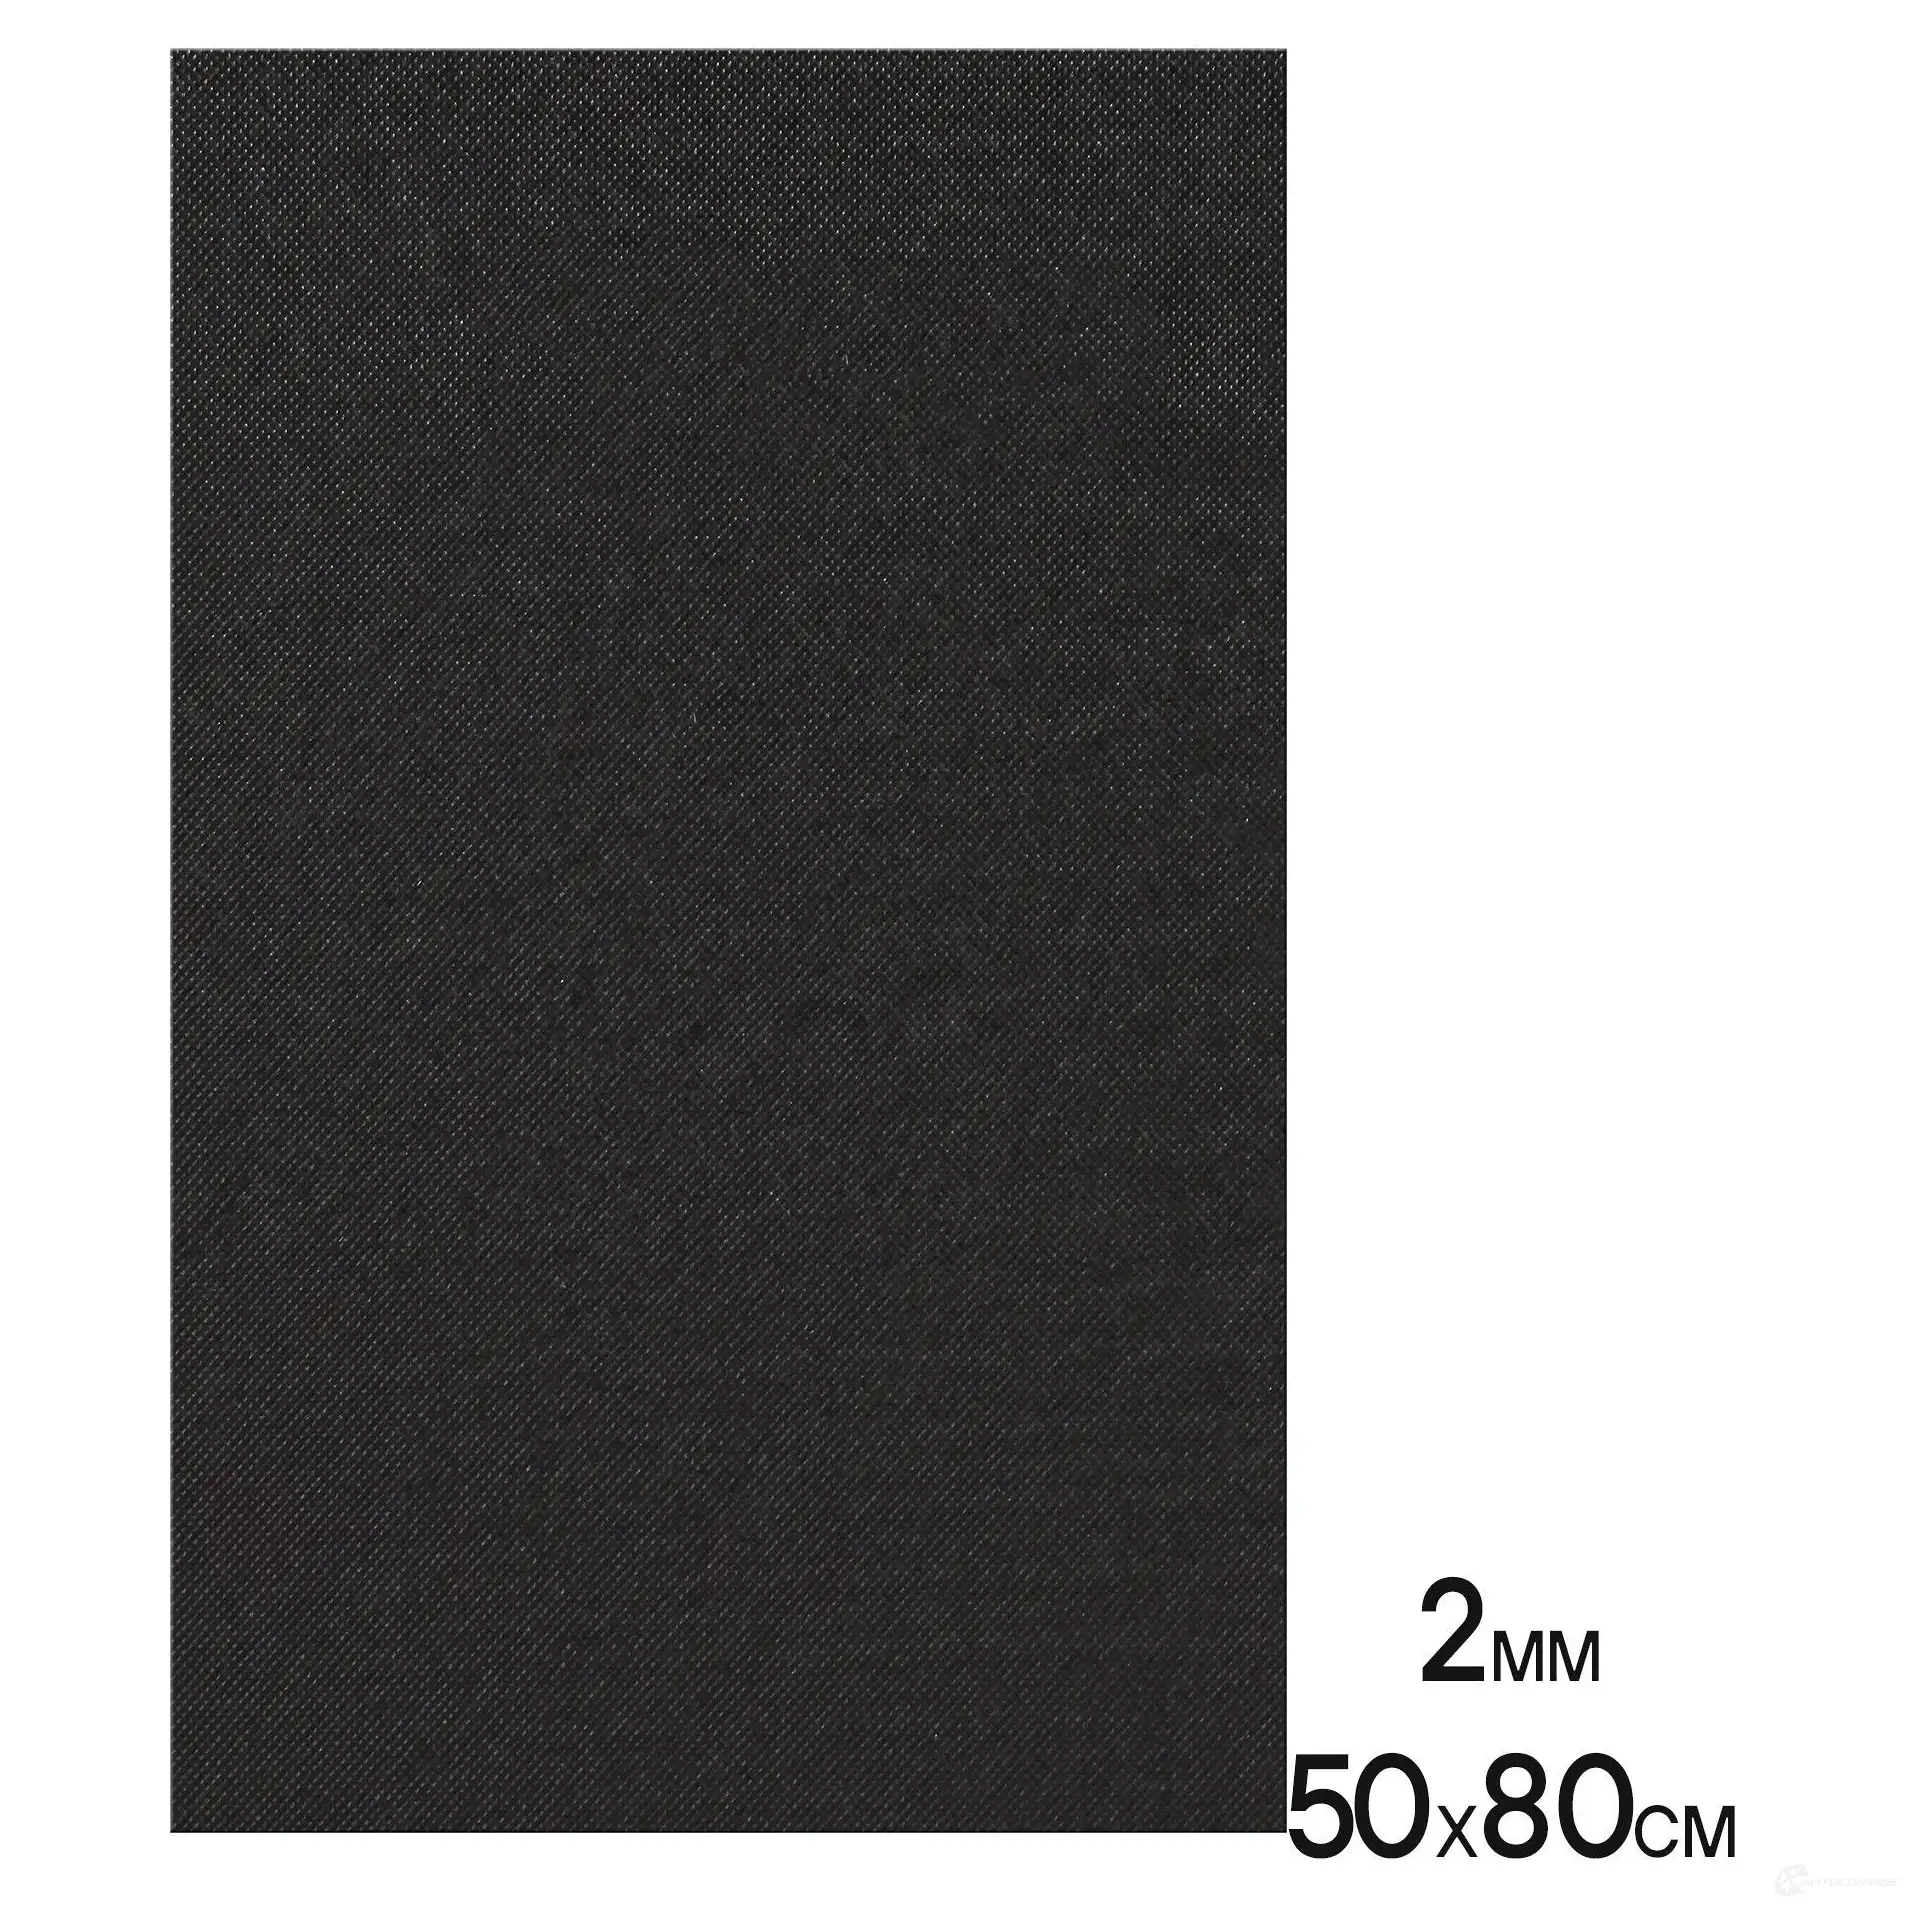 Шумоизоляция (изолирующая мембрана) М2Н (50*80 см), КС, 2 мм, неткан.материал AIRLINE 1438173333 2H OT0TX admi002 изображение 1